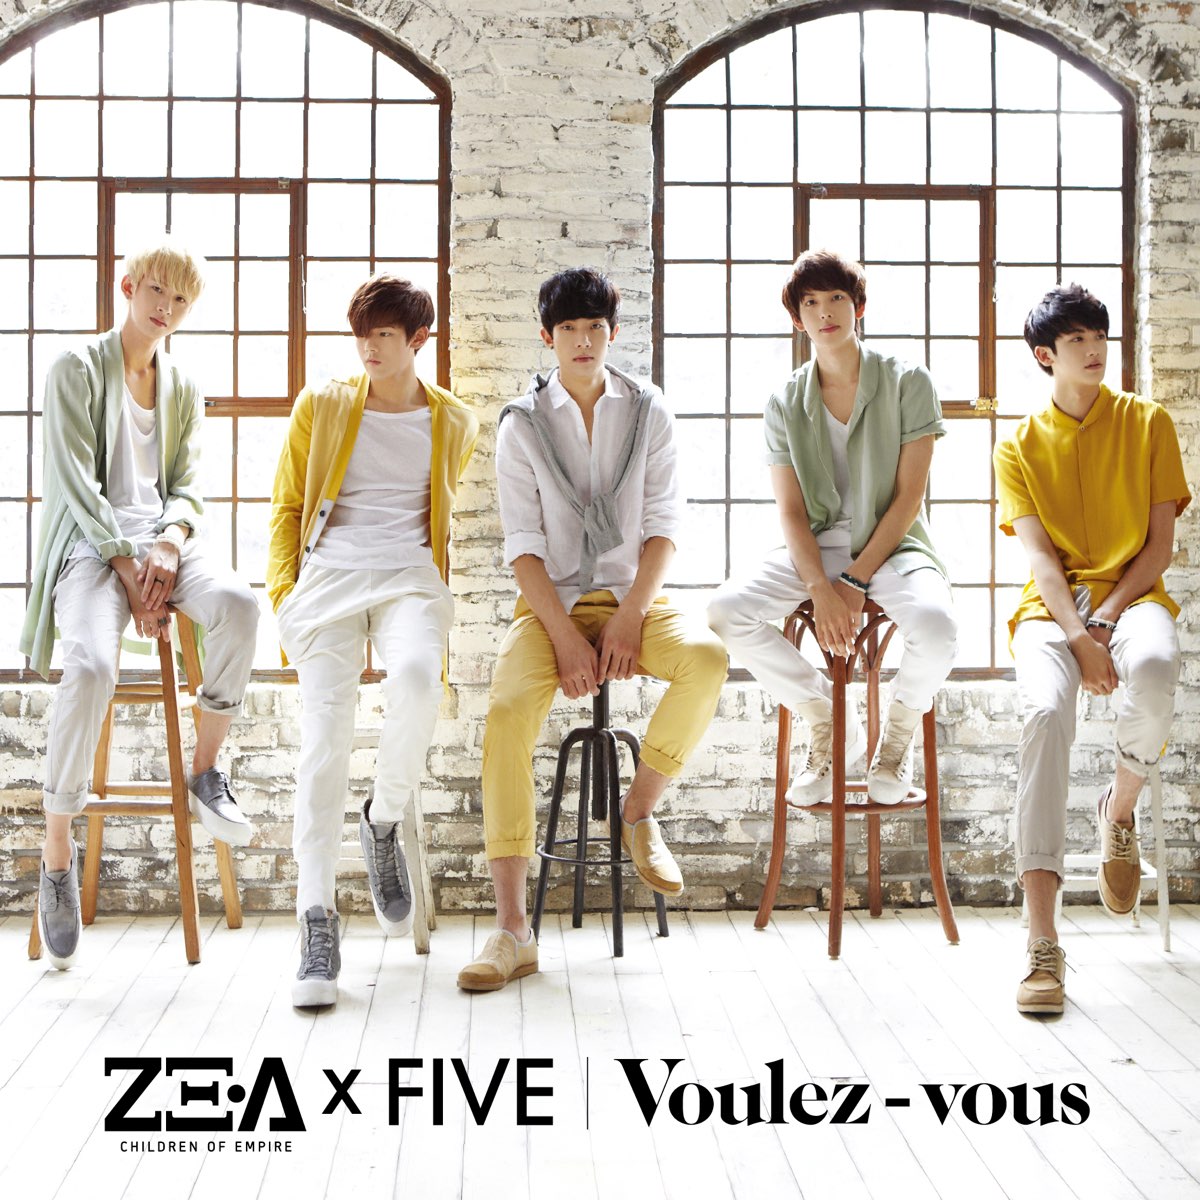 Up kpop. Группа ze:a Five. Ze:a Five участники. Ze a корейская группа участники. Ze:a.